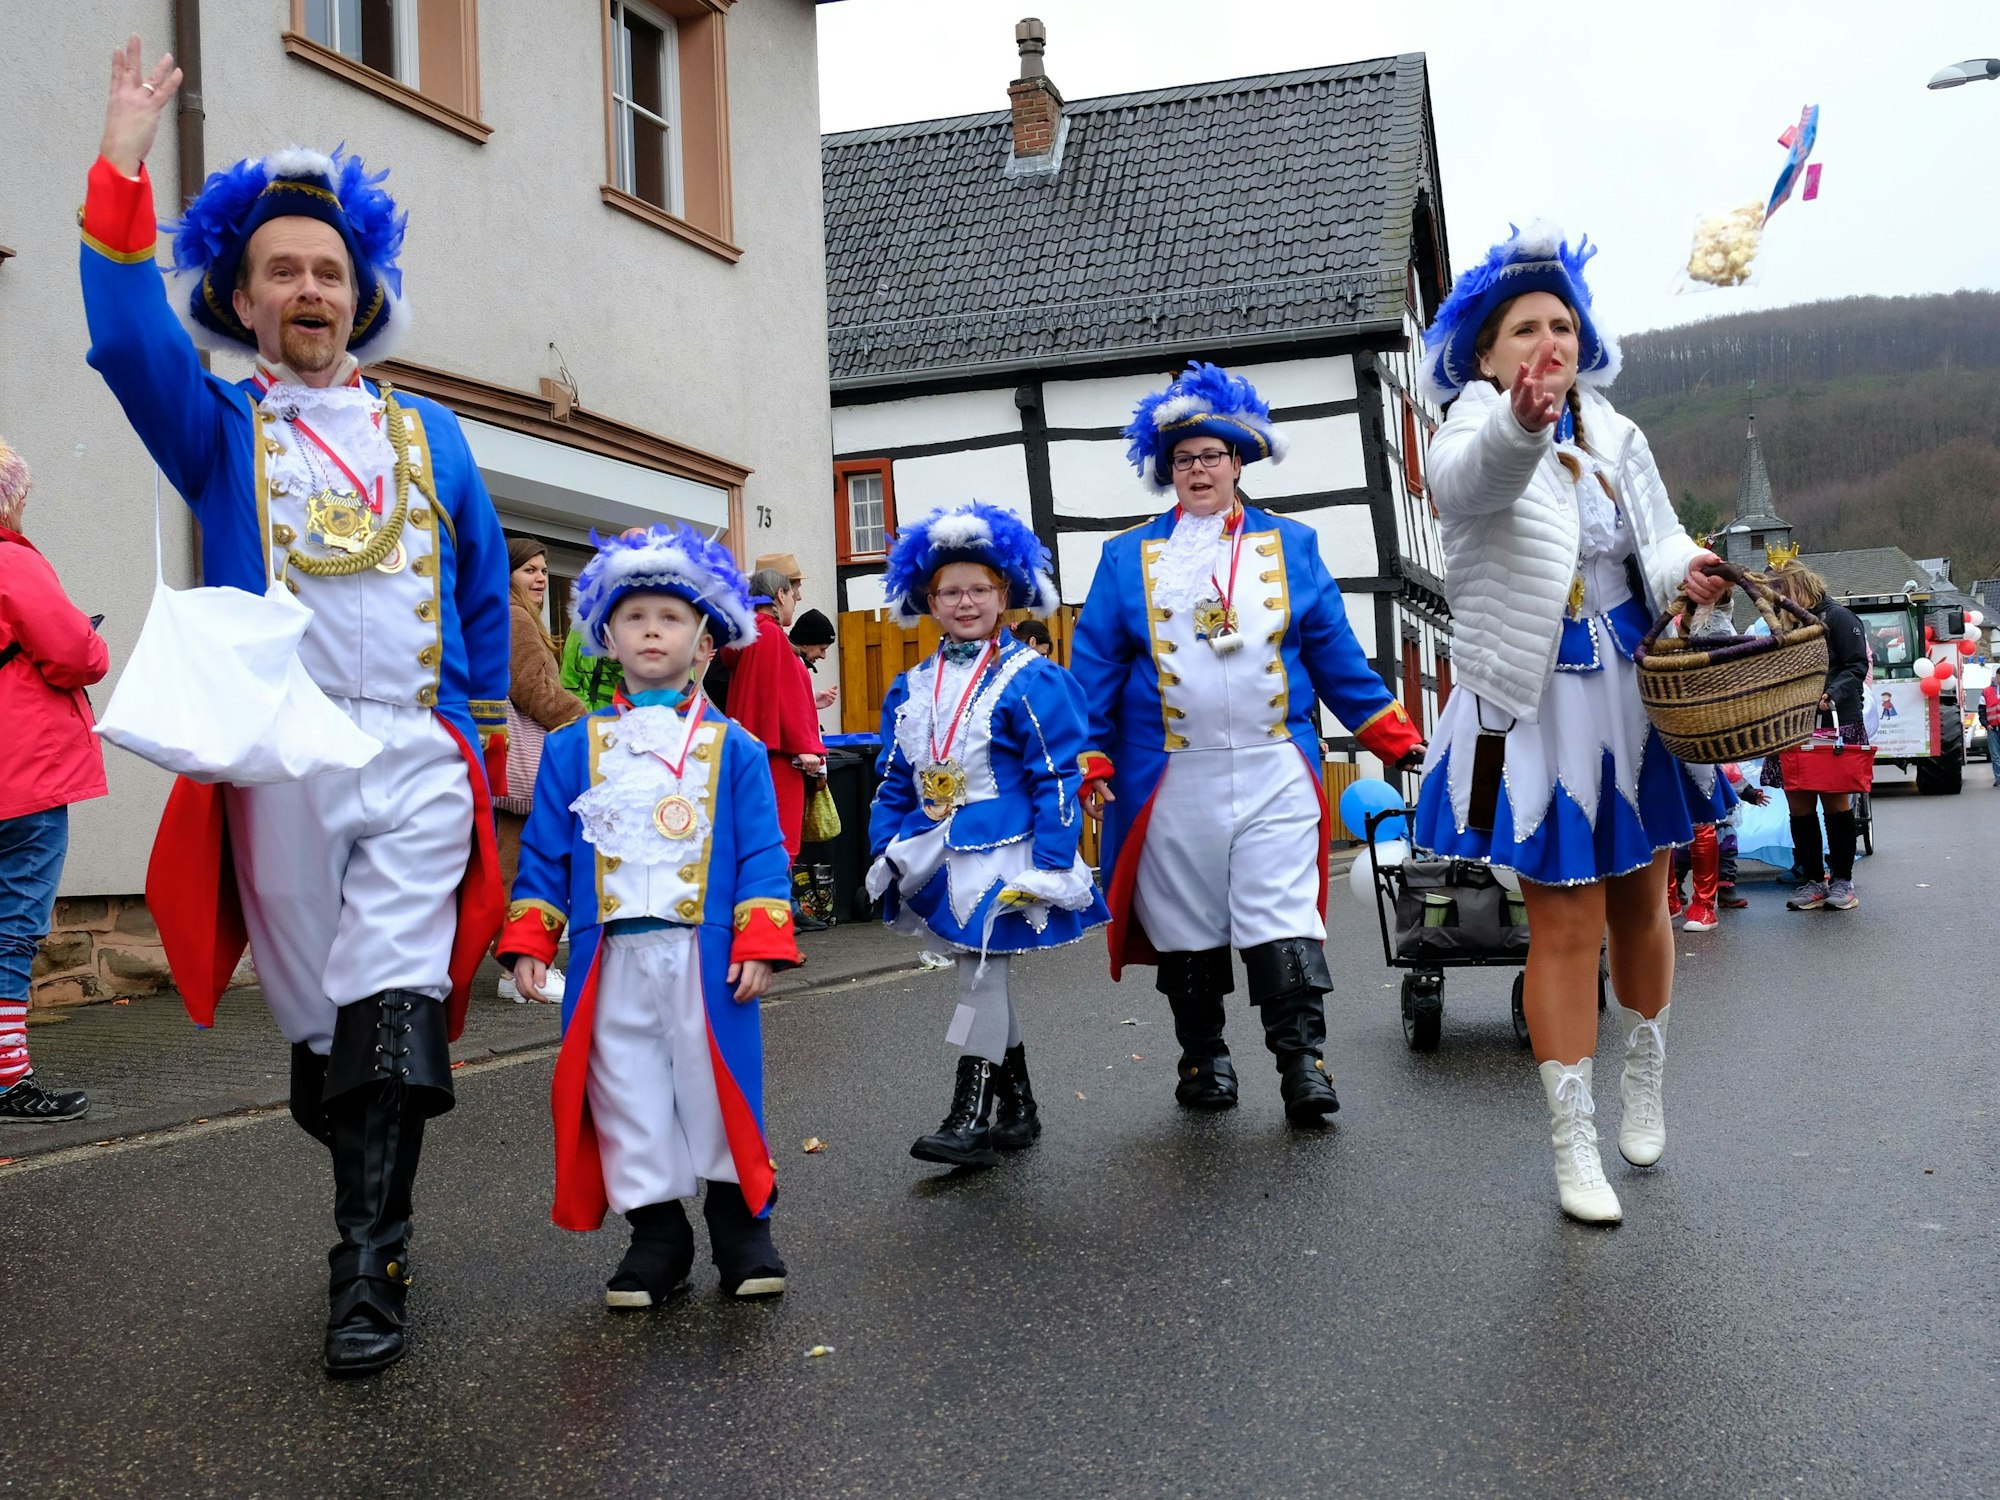 Das Tambourcorps Heimbach hatte beim Karnevalszug in diesem Jahr die Garde-Uniform angelegt.